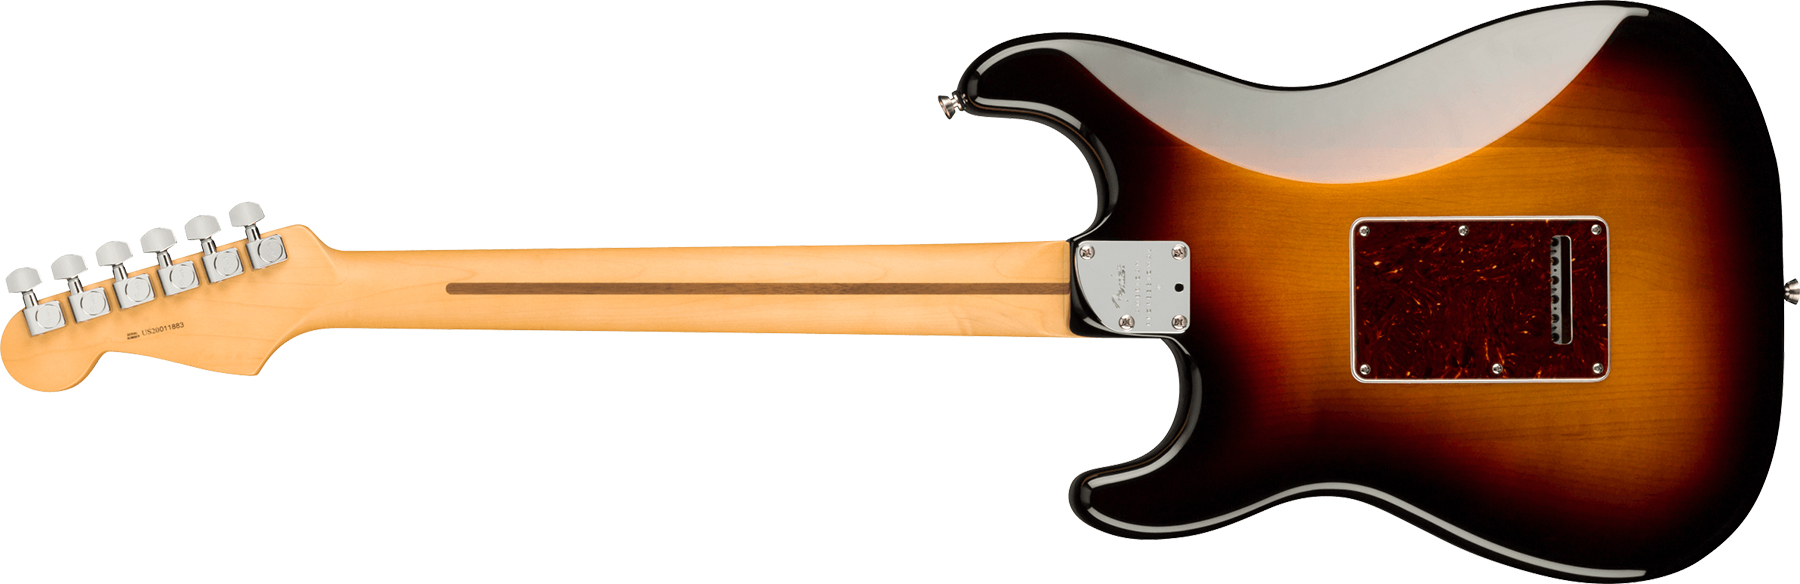 Fender Strat American Professional Ii Hss Usa Mn - 3-color Sunburst - Str shape electric guitar - Variation 1